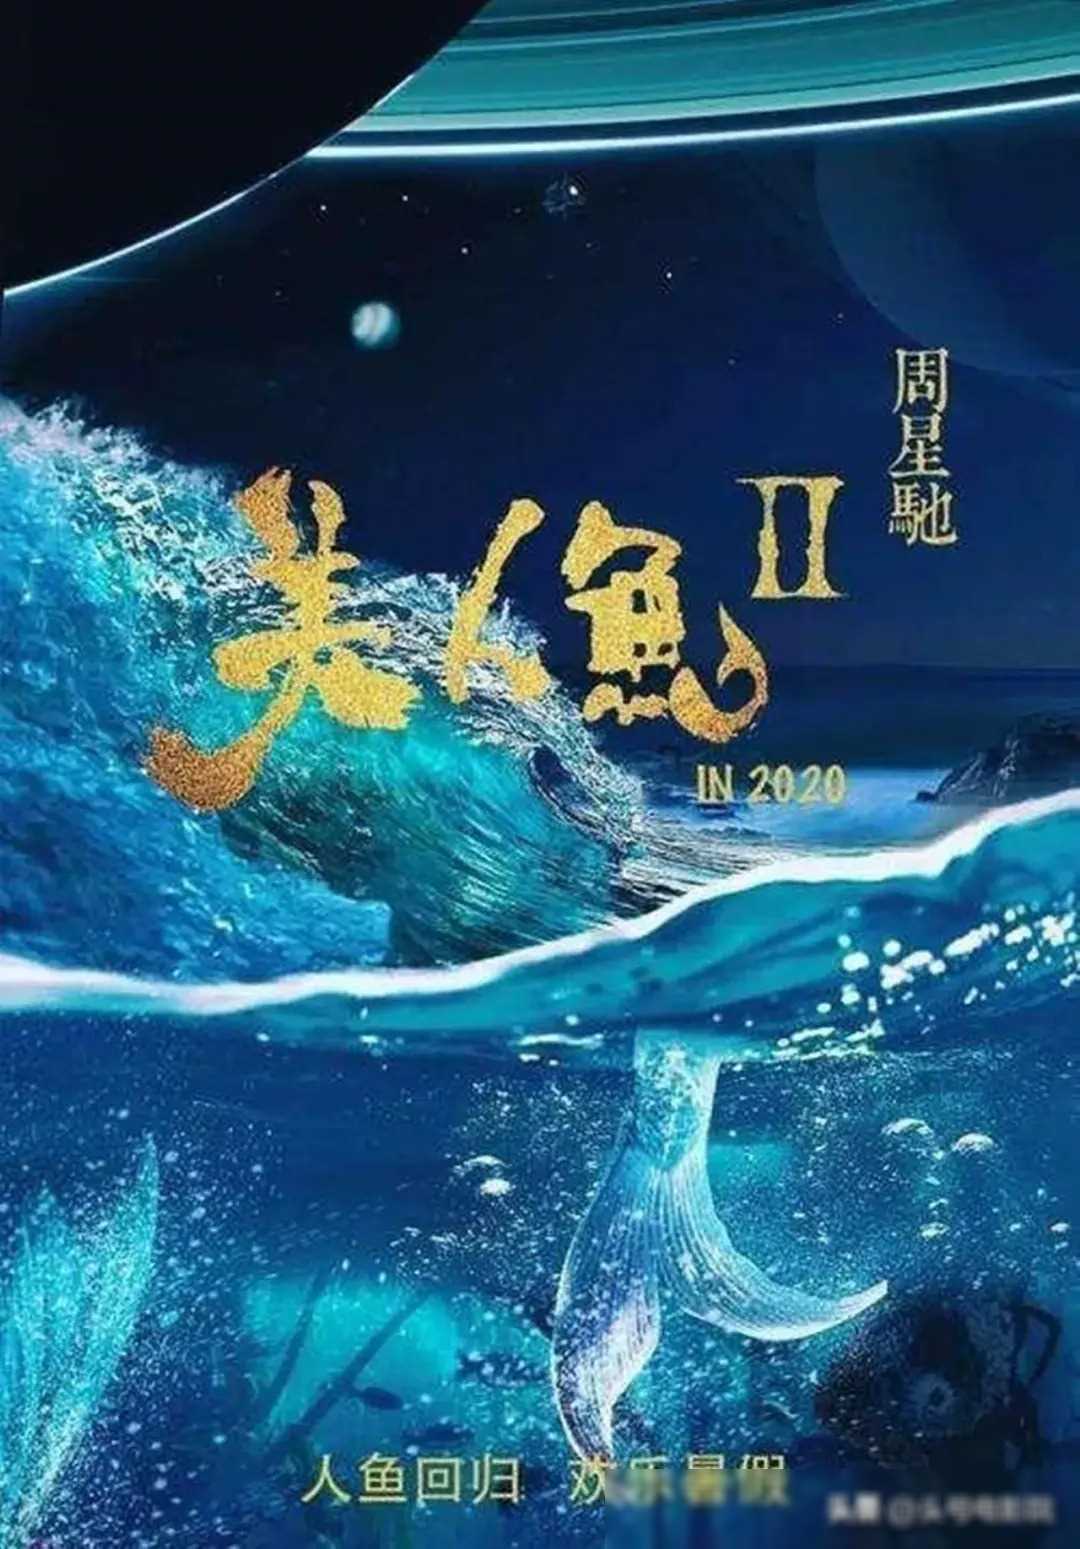 周星驰新片曝光:《美人鱼2》重出江湖,劣迹艺人阴谋害惨星爷